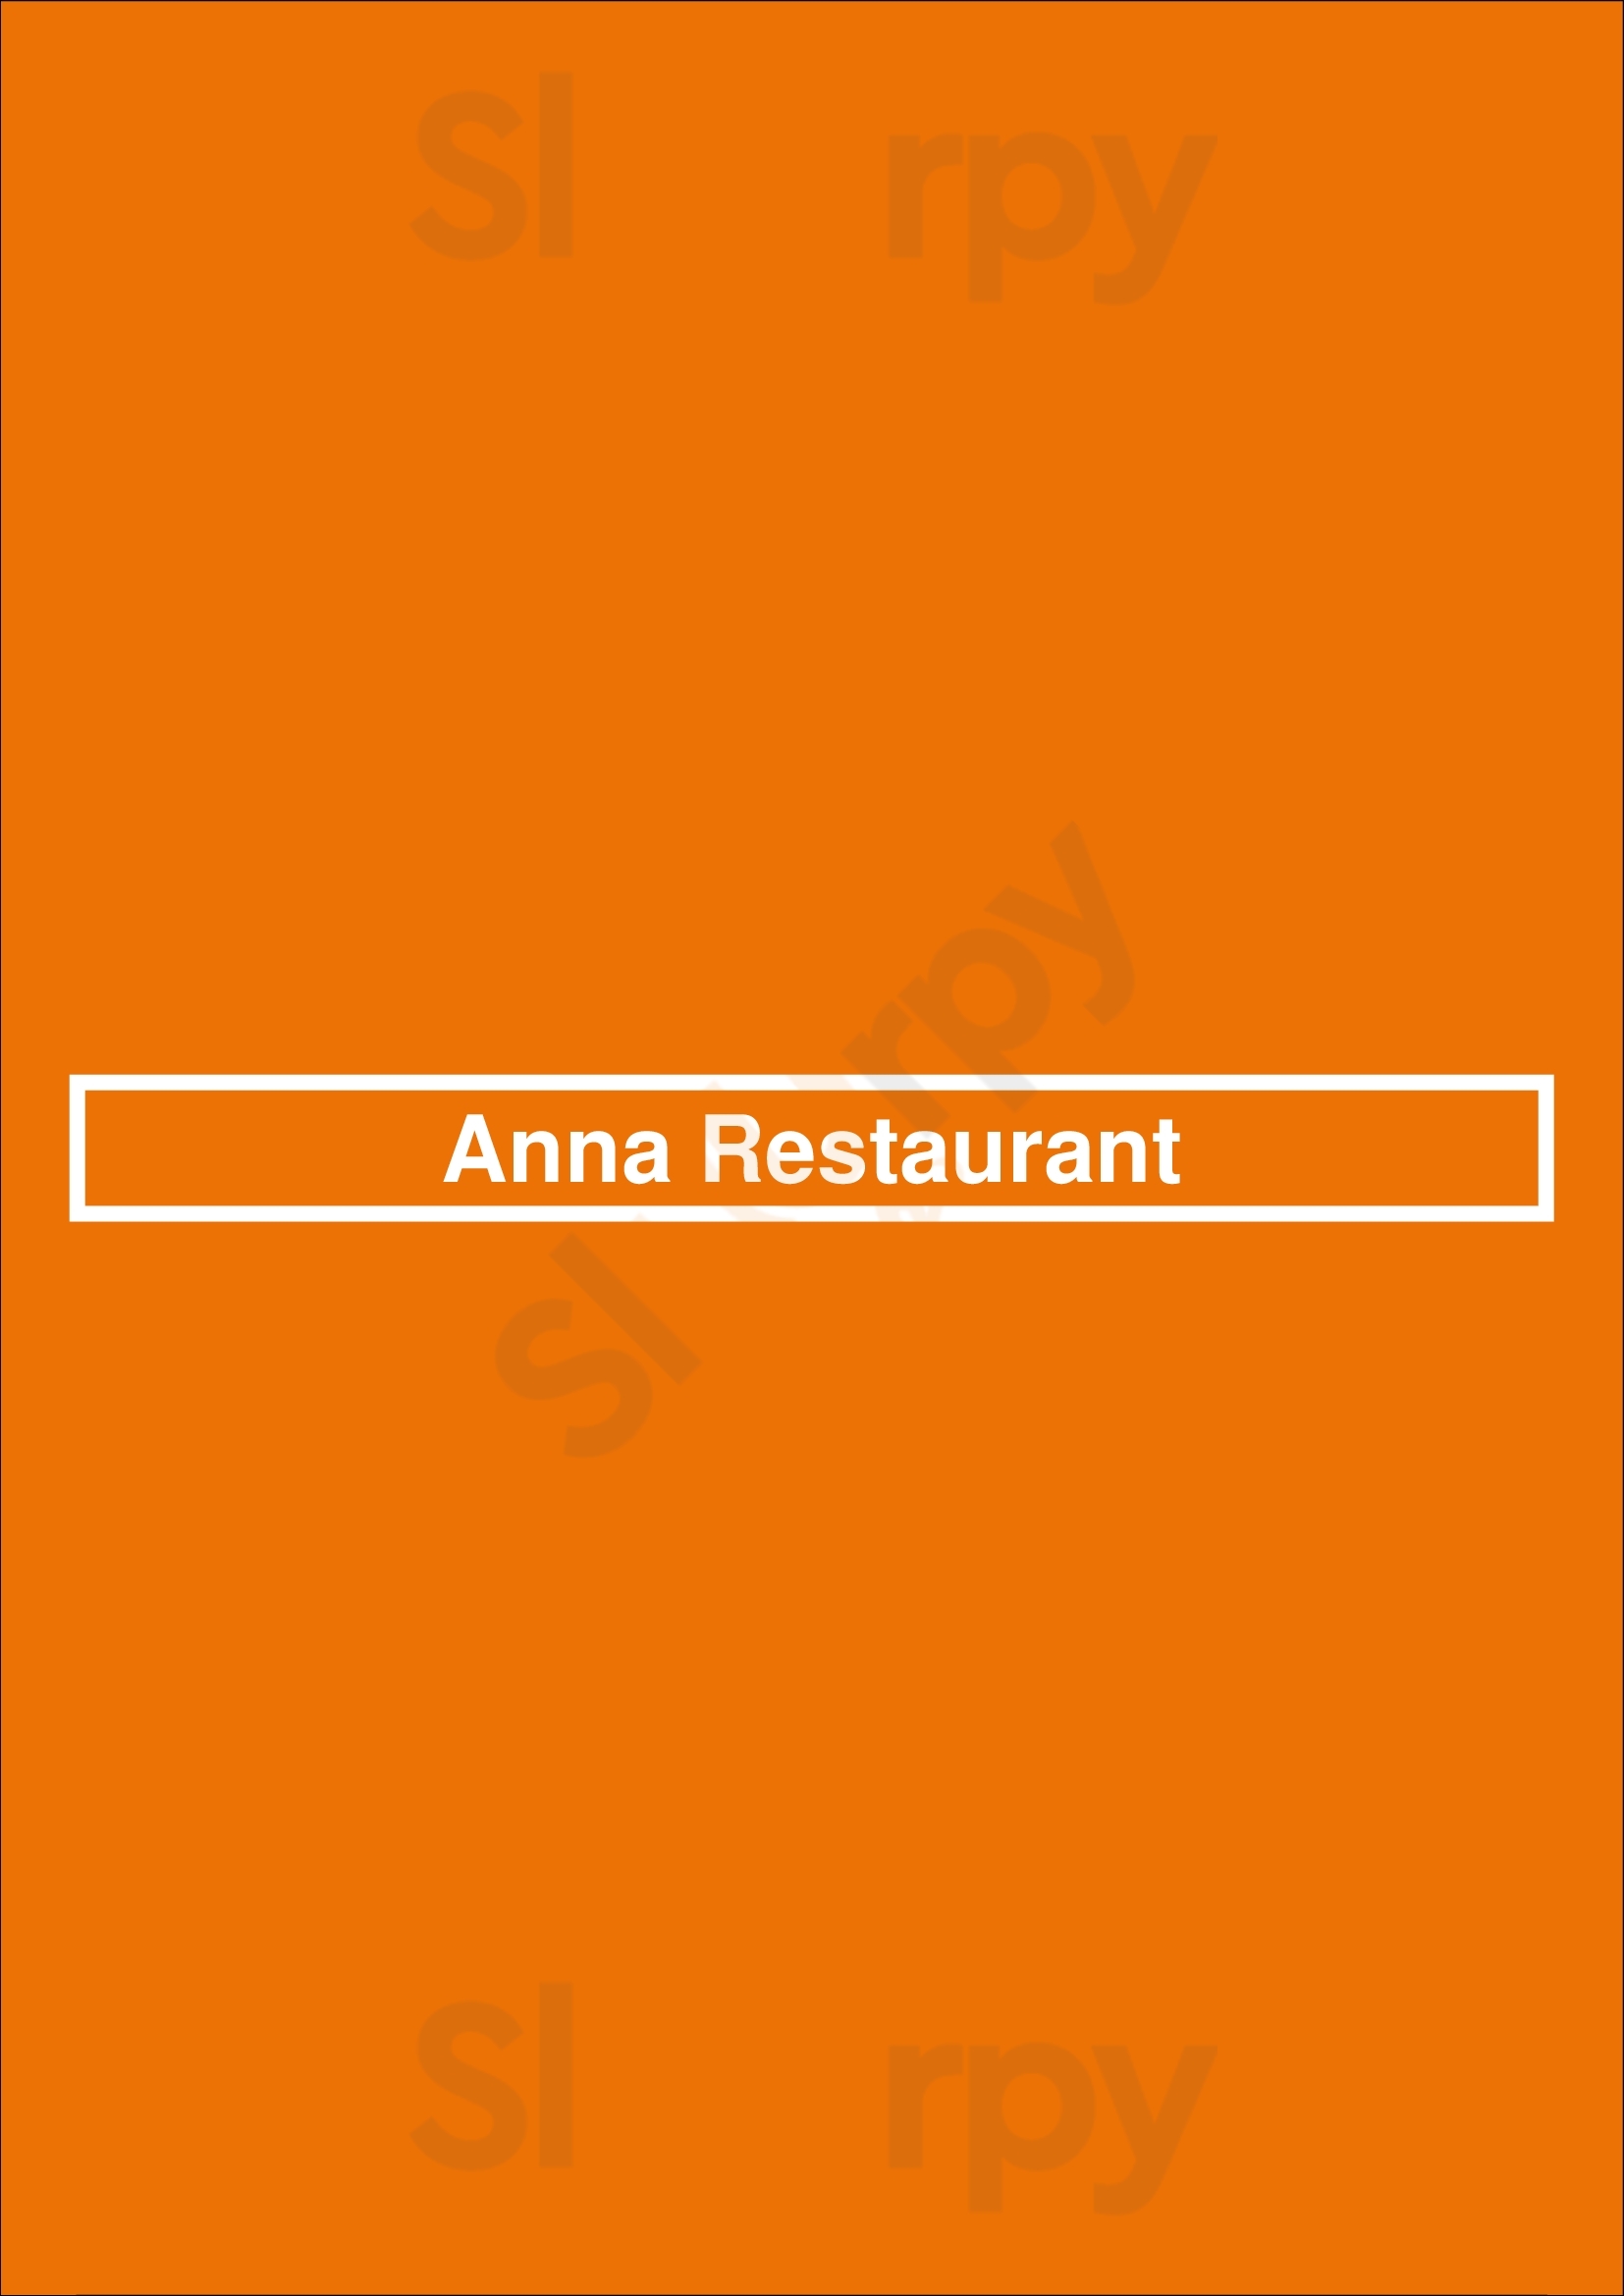 Anna Restaurant München Menu - 1